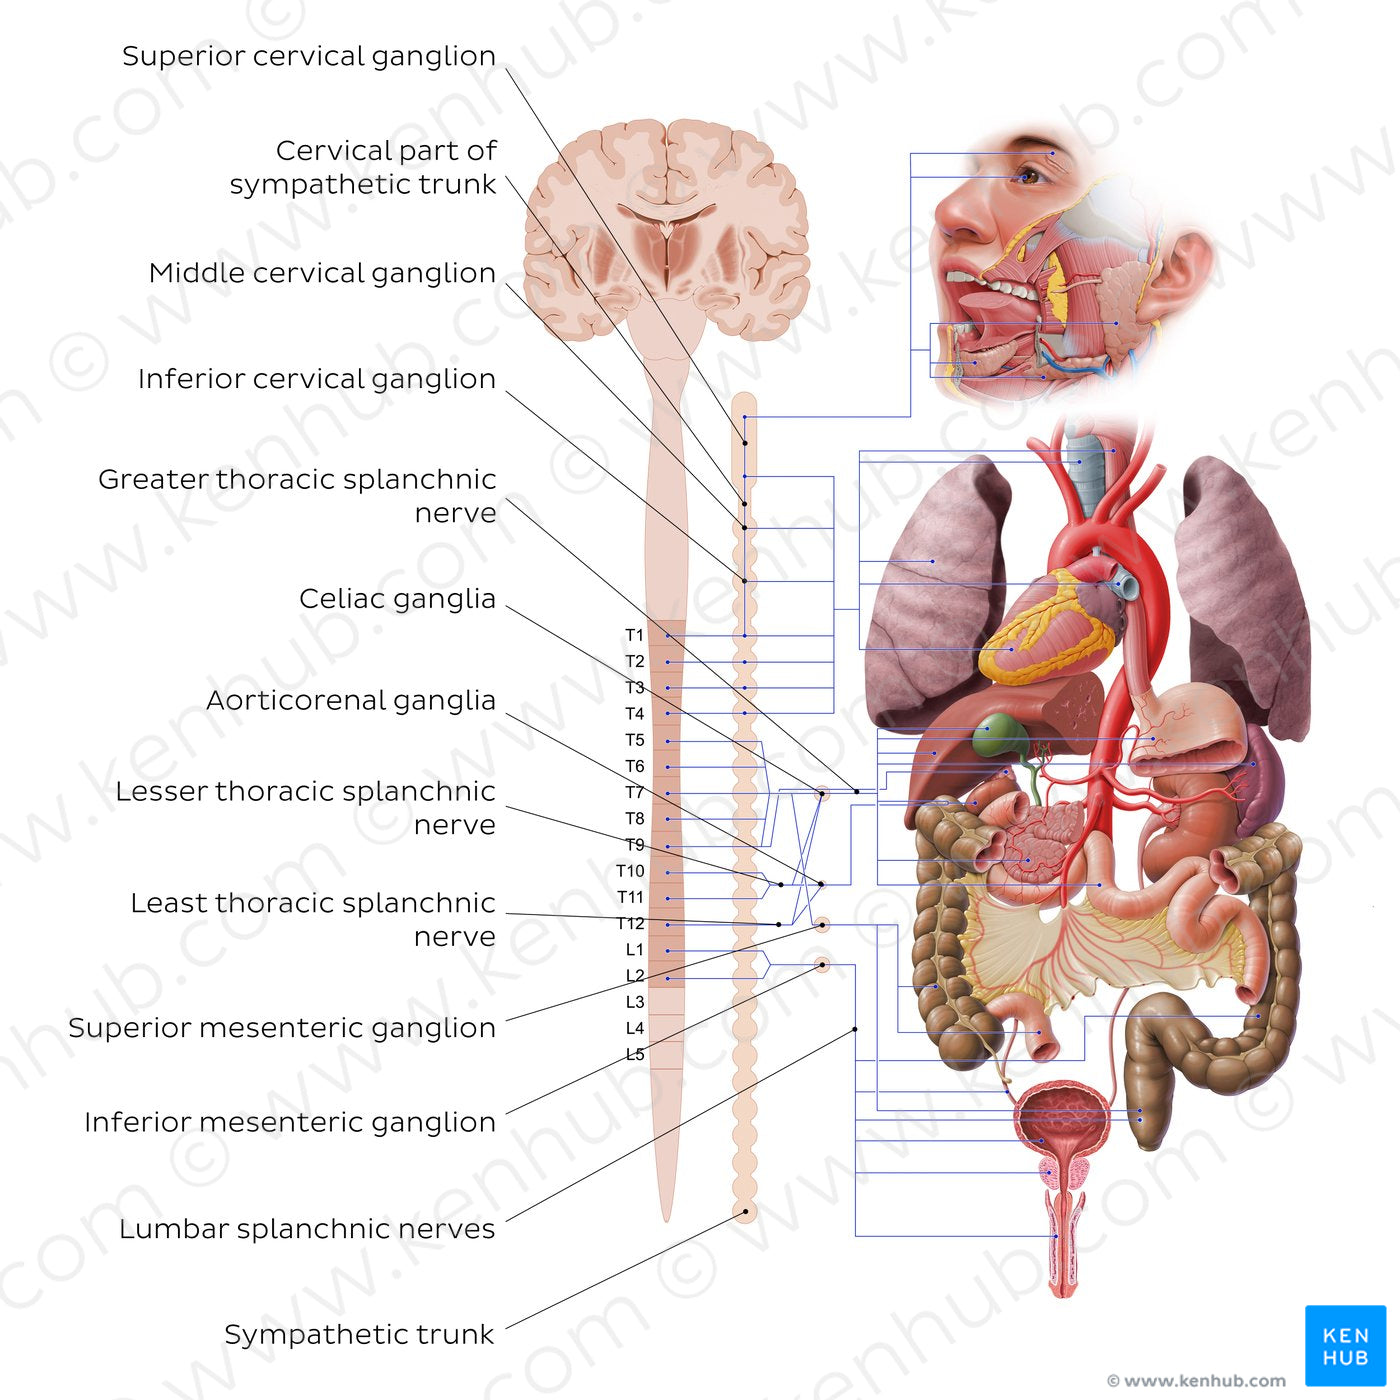 Autonomic nervous system - sympathetic nervous system (English)